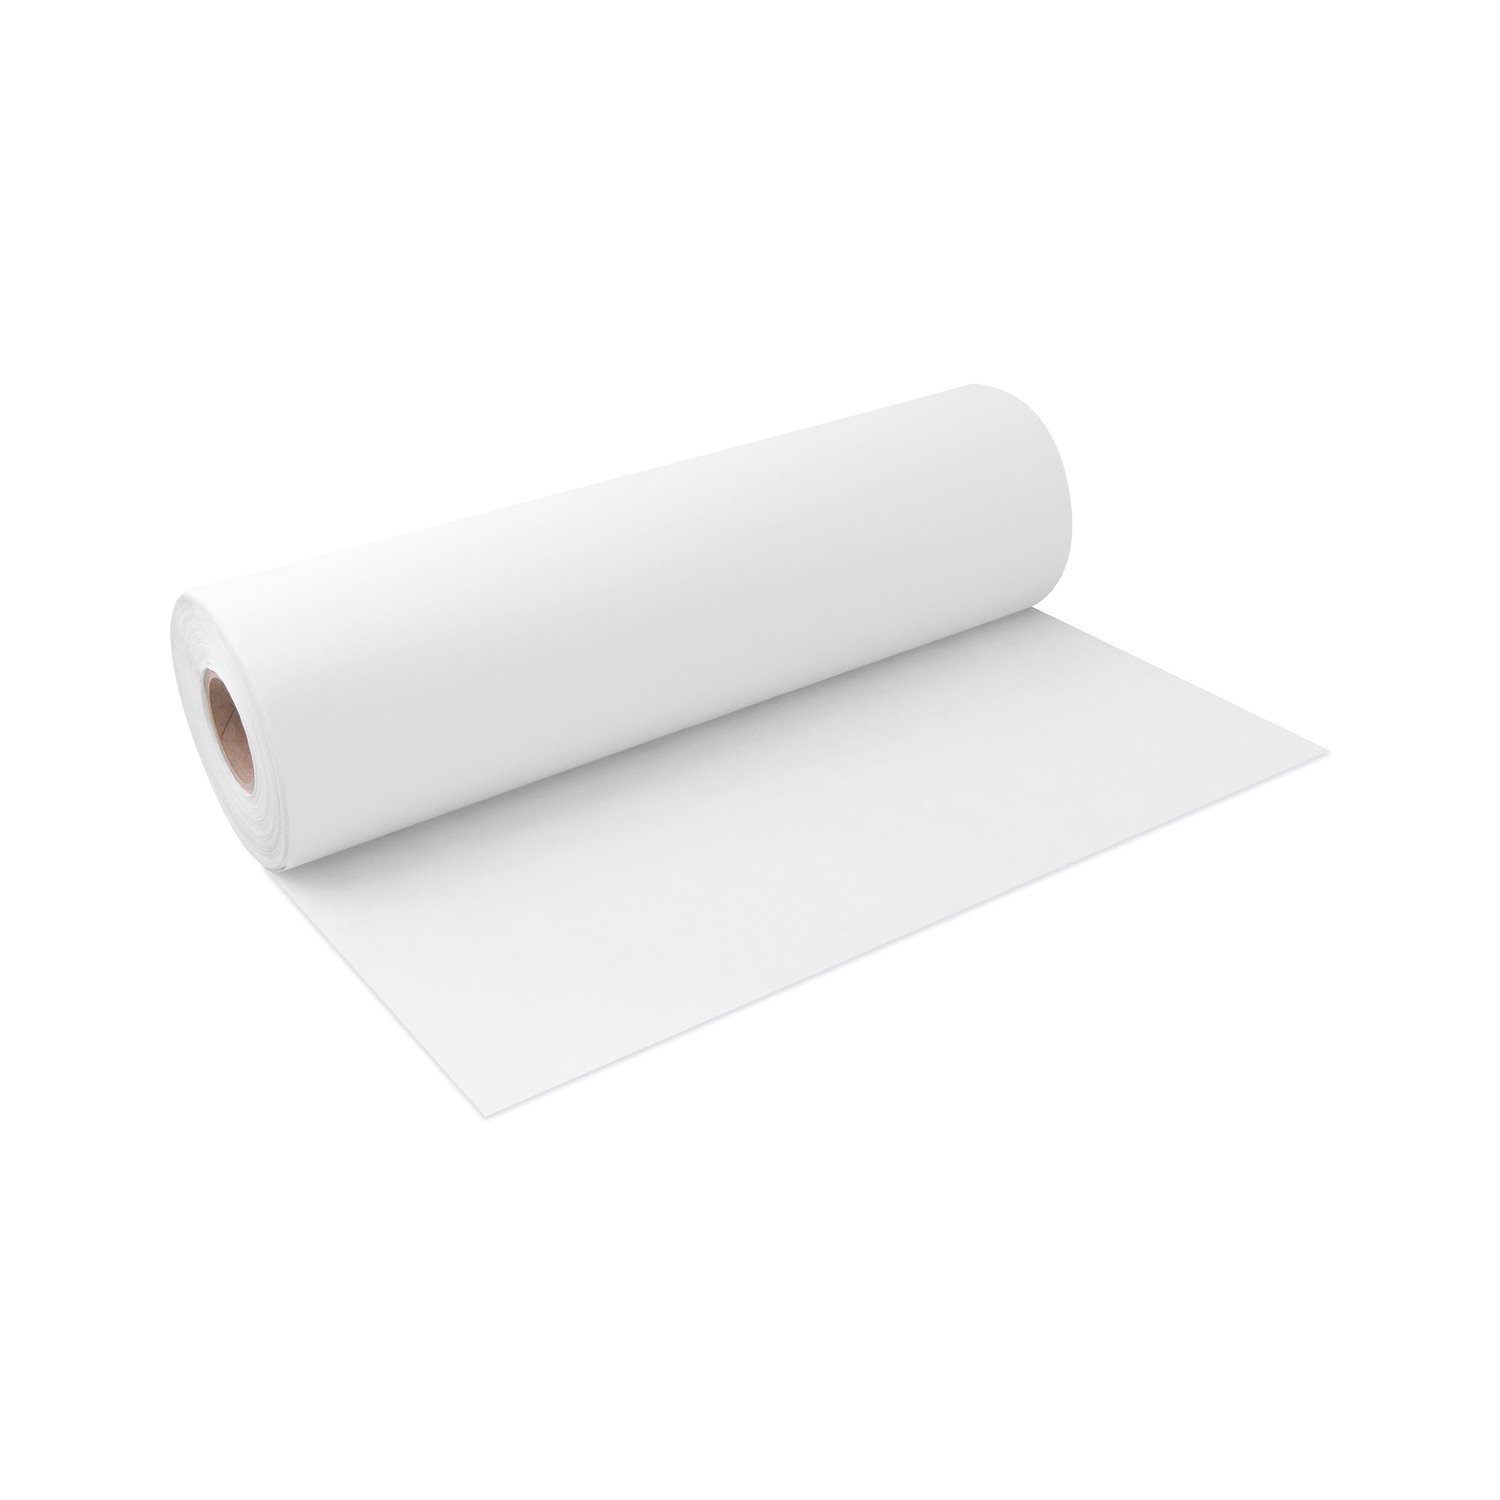 Backpapier gerollt weiß 50cm x 200m - 1 Stück